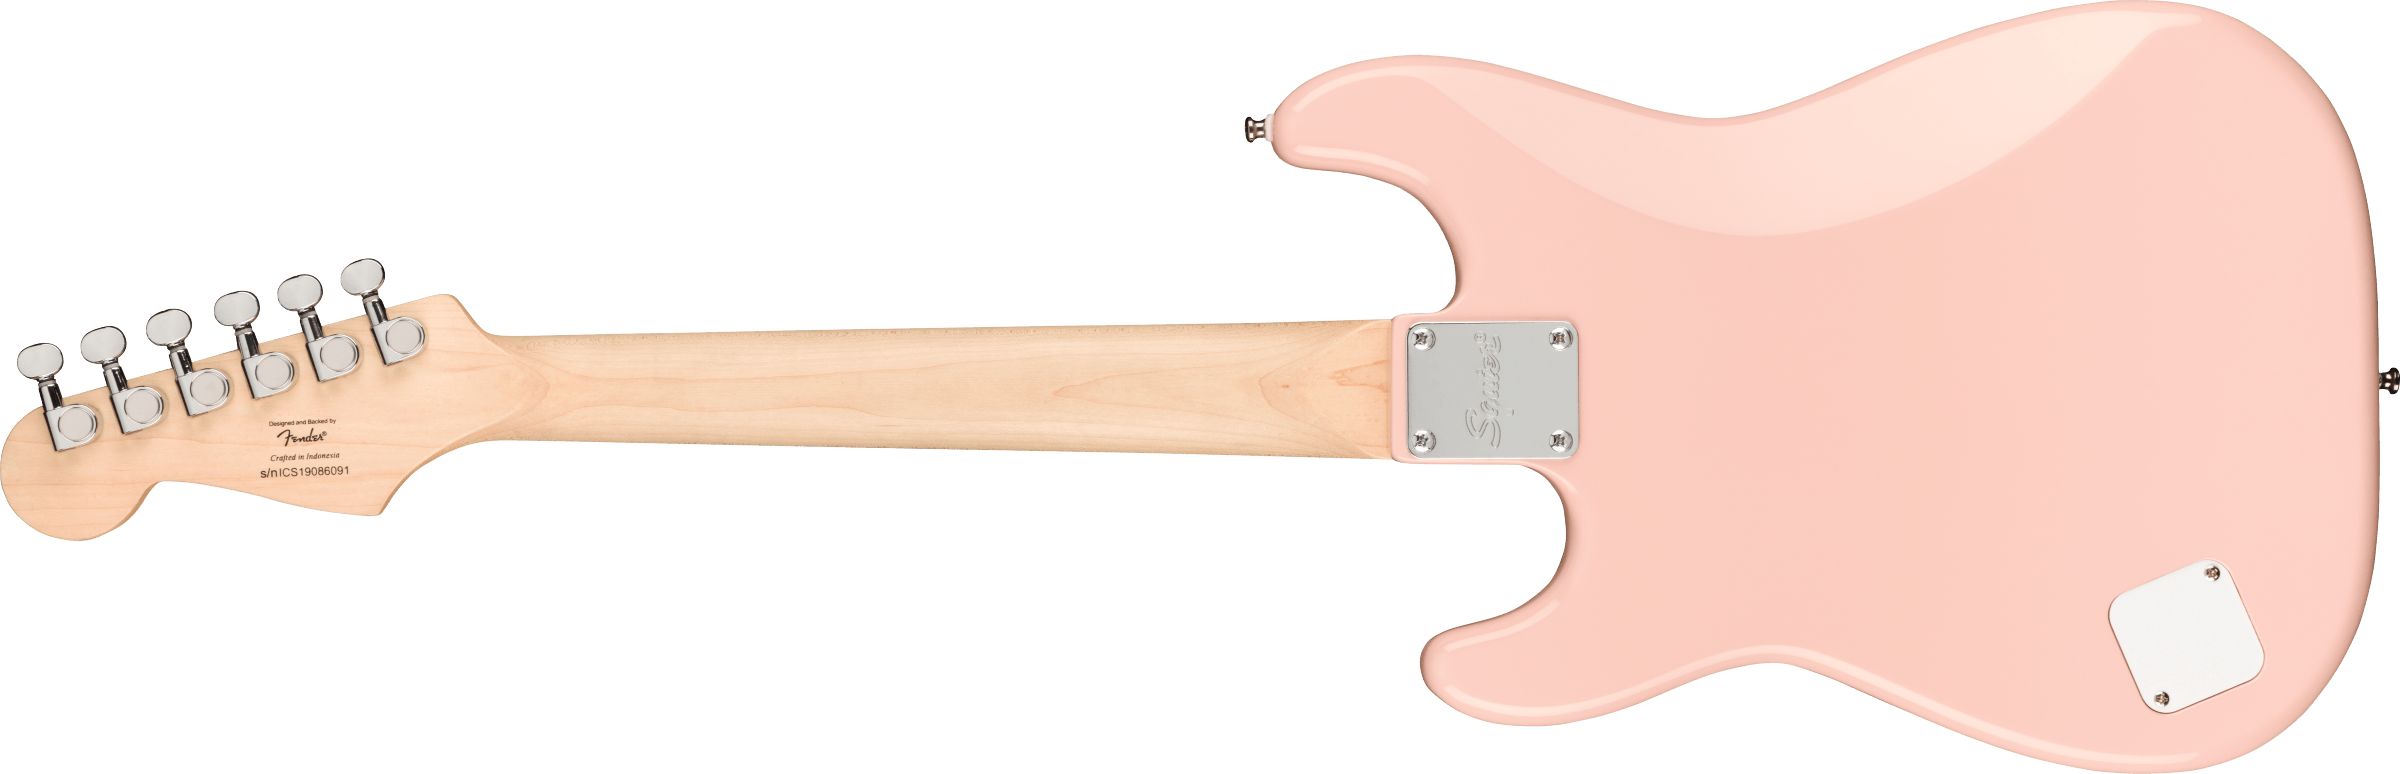 Squier Squier Mini Strat V2 Ht Sss Lau - Shell Pink - Elektrische gitaar voor kinderen - Variation 1